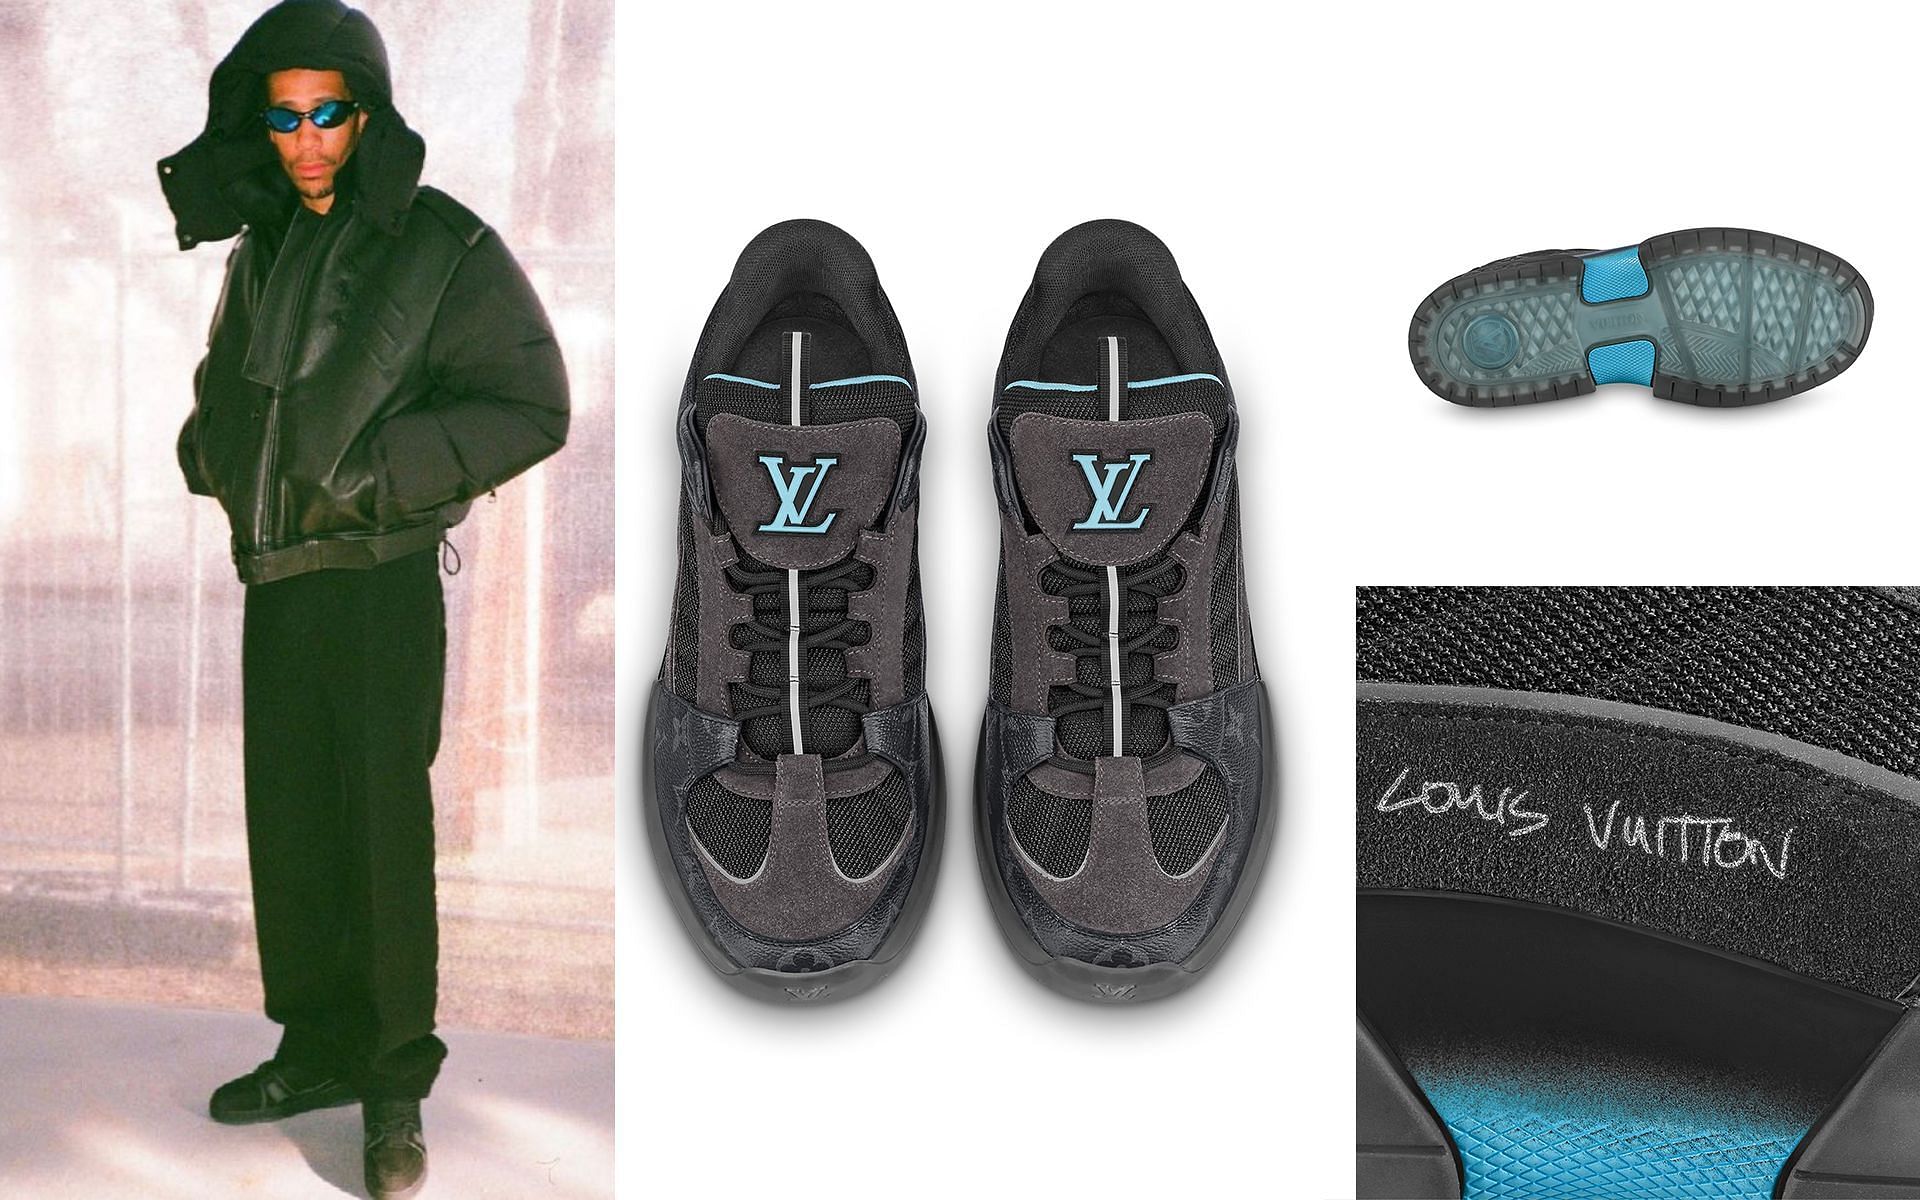 Lucien Clarke Reveals Signature Louis Vuitton Skate Shoe